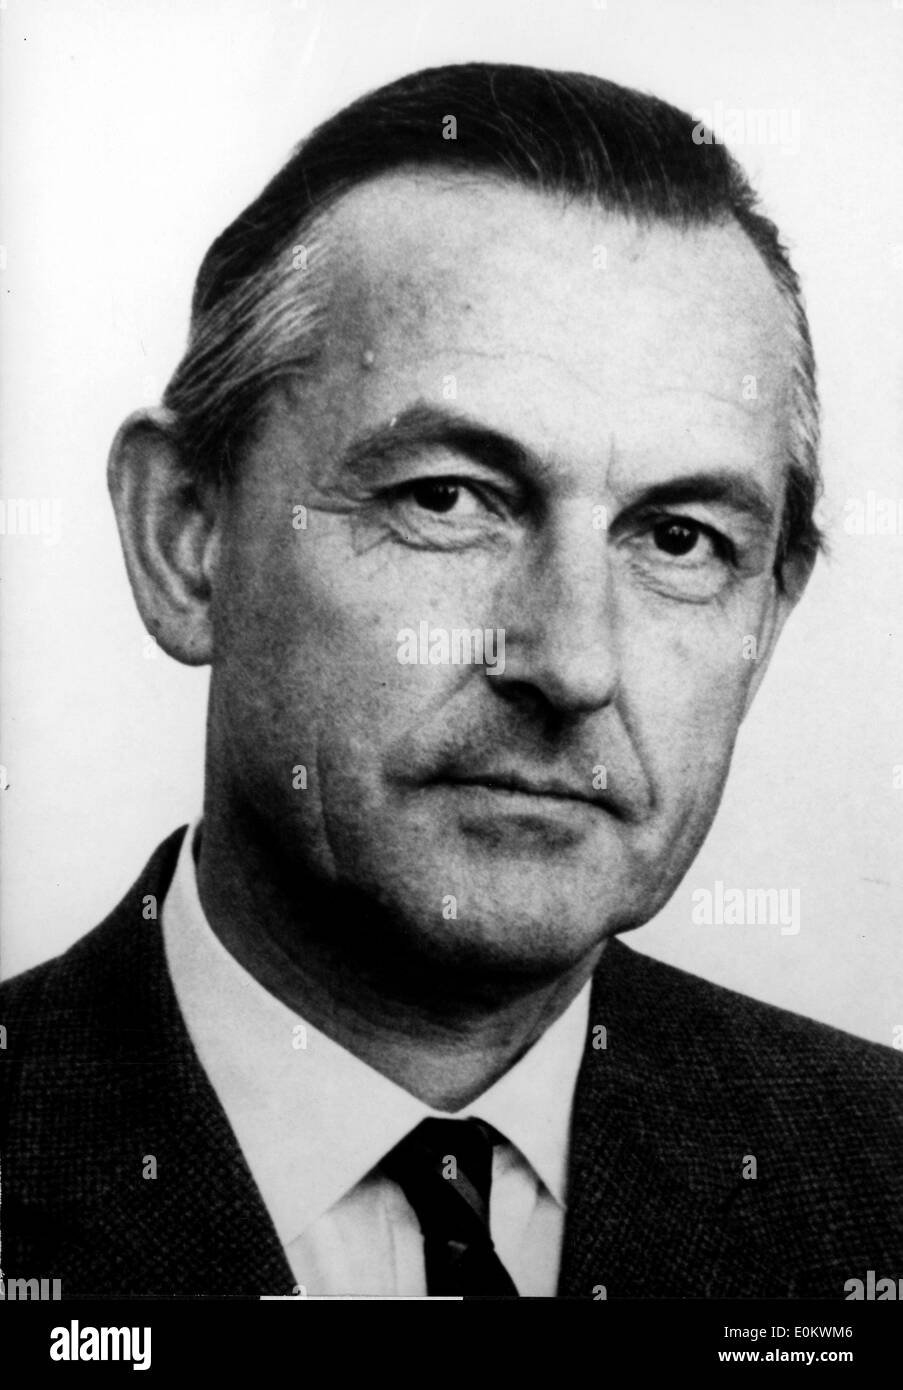 Aug 02, 1950; Paris, Francia; ritratto del ministro danese di europeo per gli affari economici, NYBOE ANDERSEN. Foto Stock